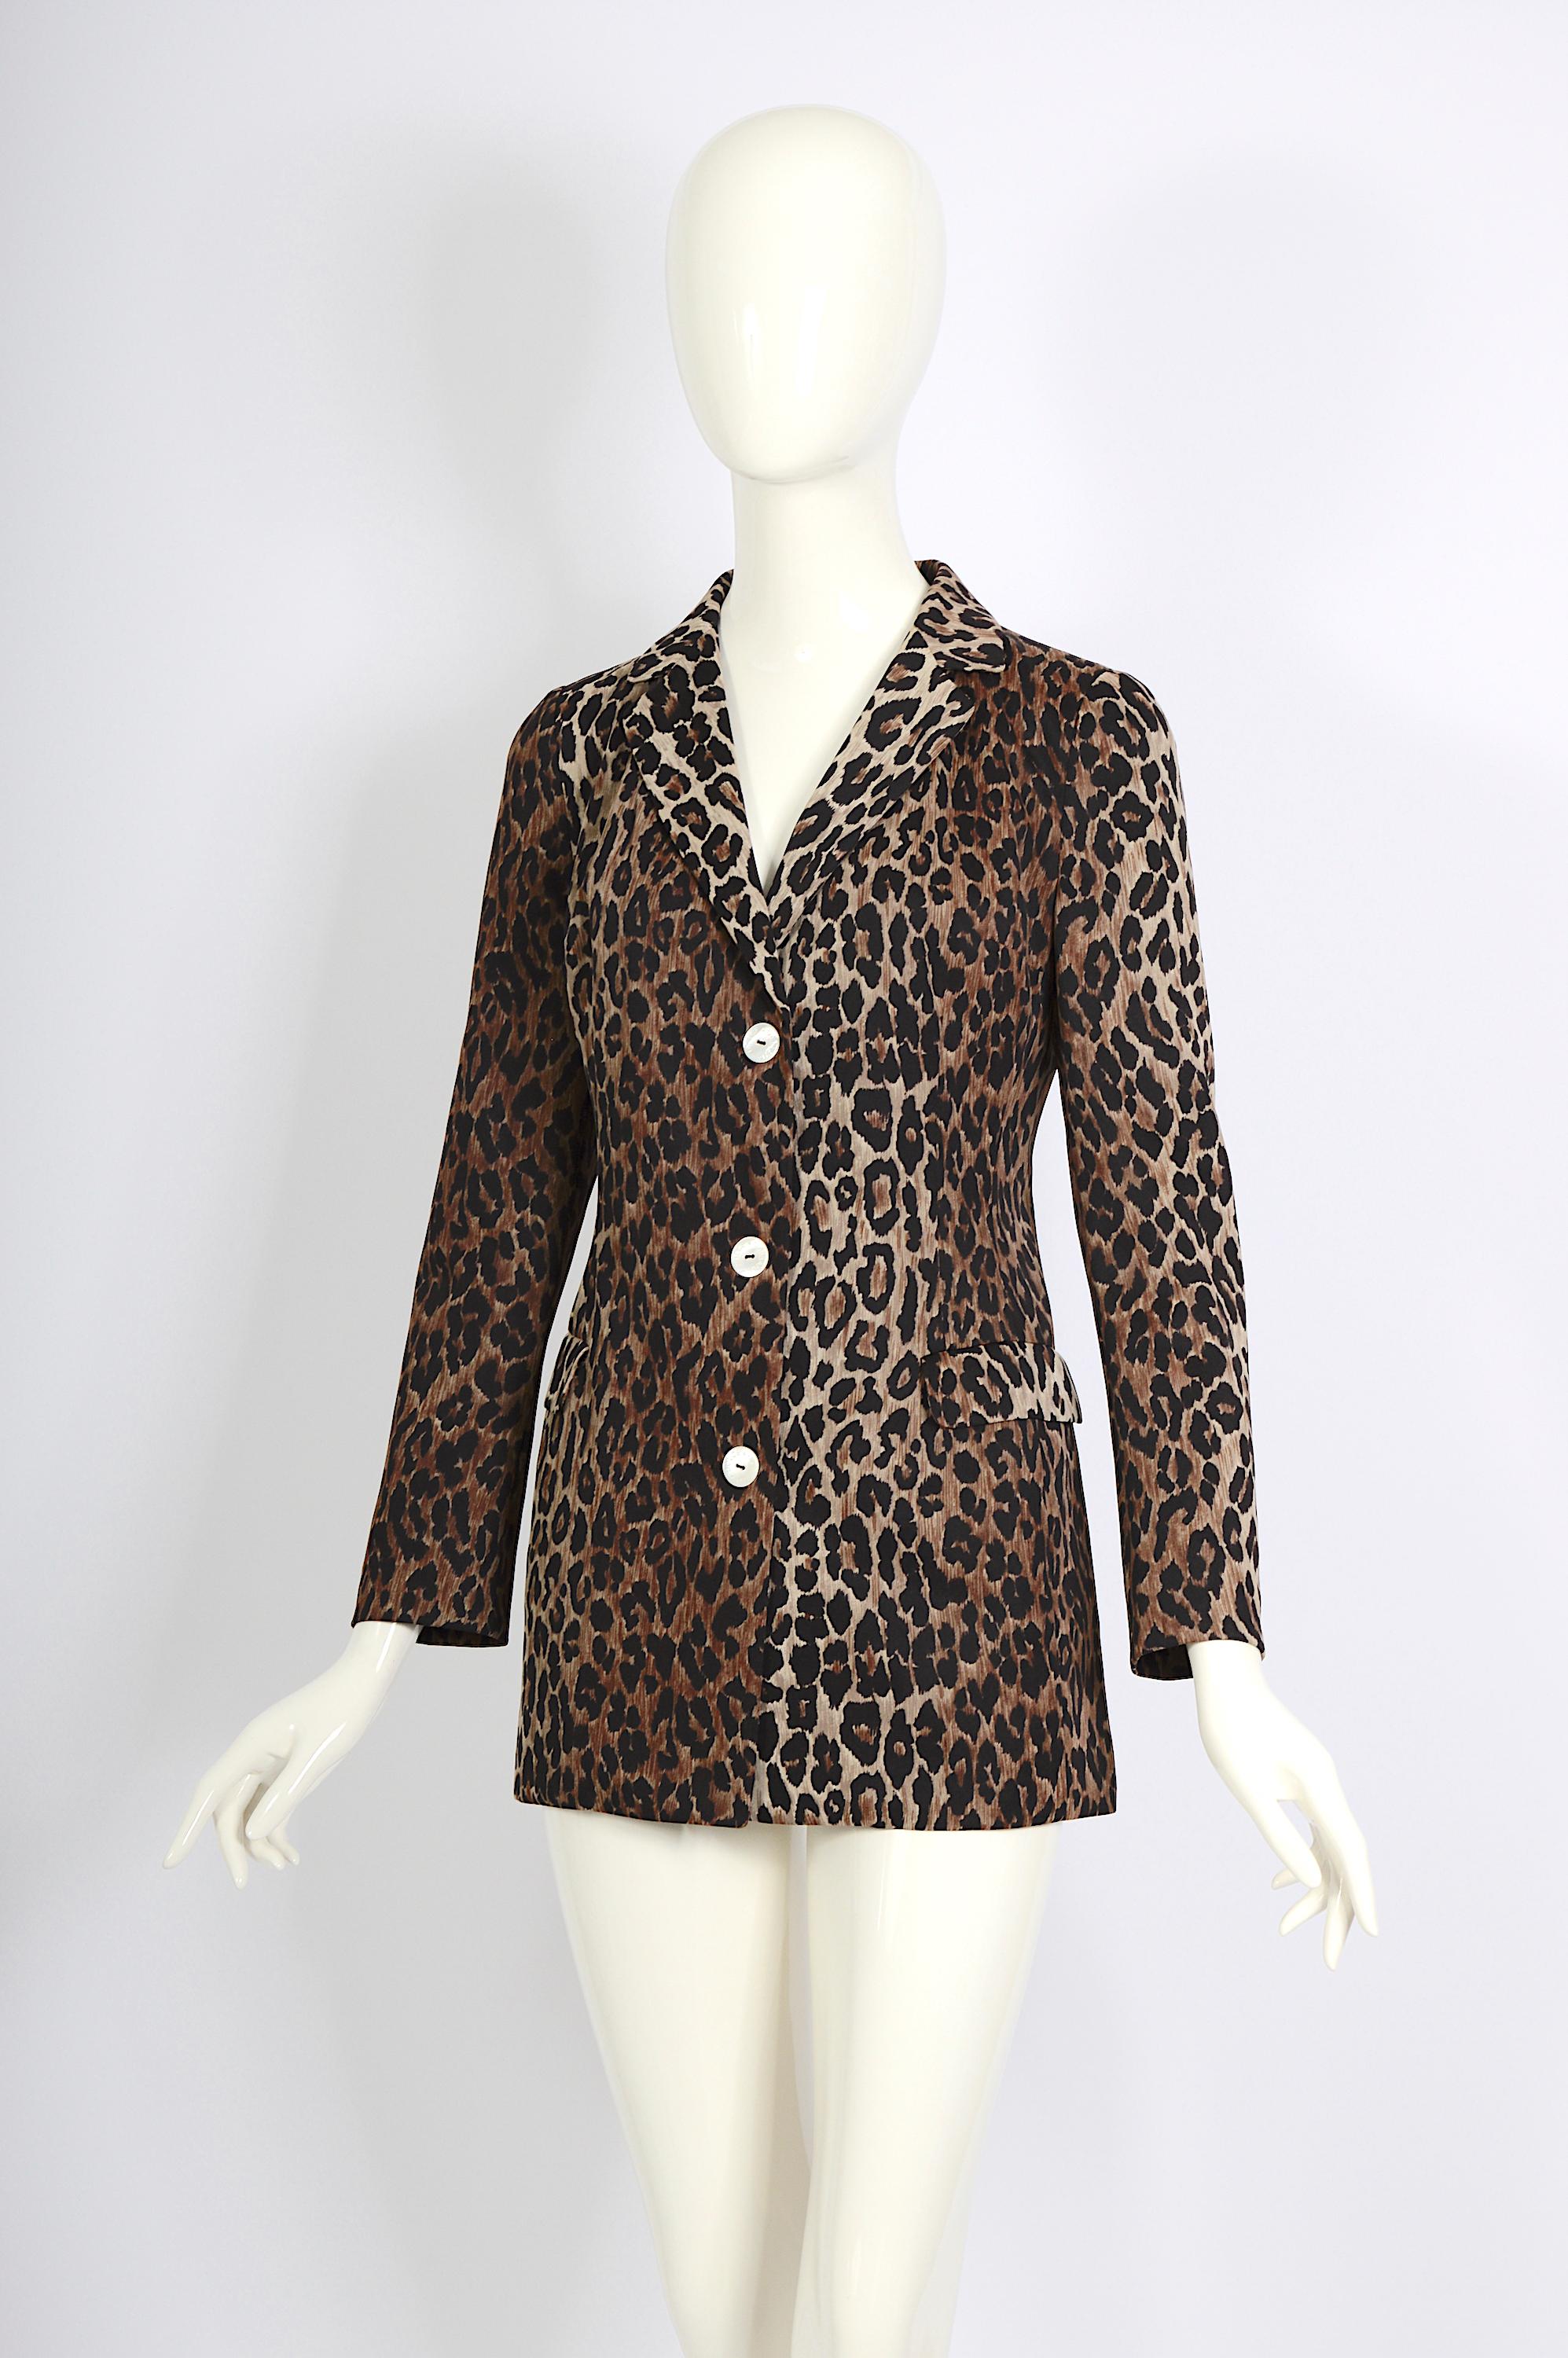 Leoparden-Jacke von Dolce & Gabbana, wie auf dem Laufsteg im Frühjahr/Sommer 1997 zu sehen.
Die Jacke ist aus Nylon gefertigt und hat die eingebrannten Knöpfe von Dolce & Gabbana. Dieses exquisite Stück ist vollständig mit dem kultigen